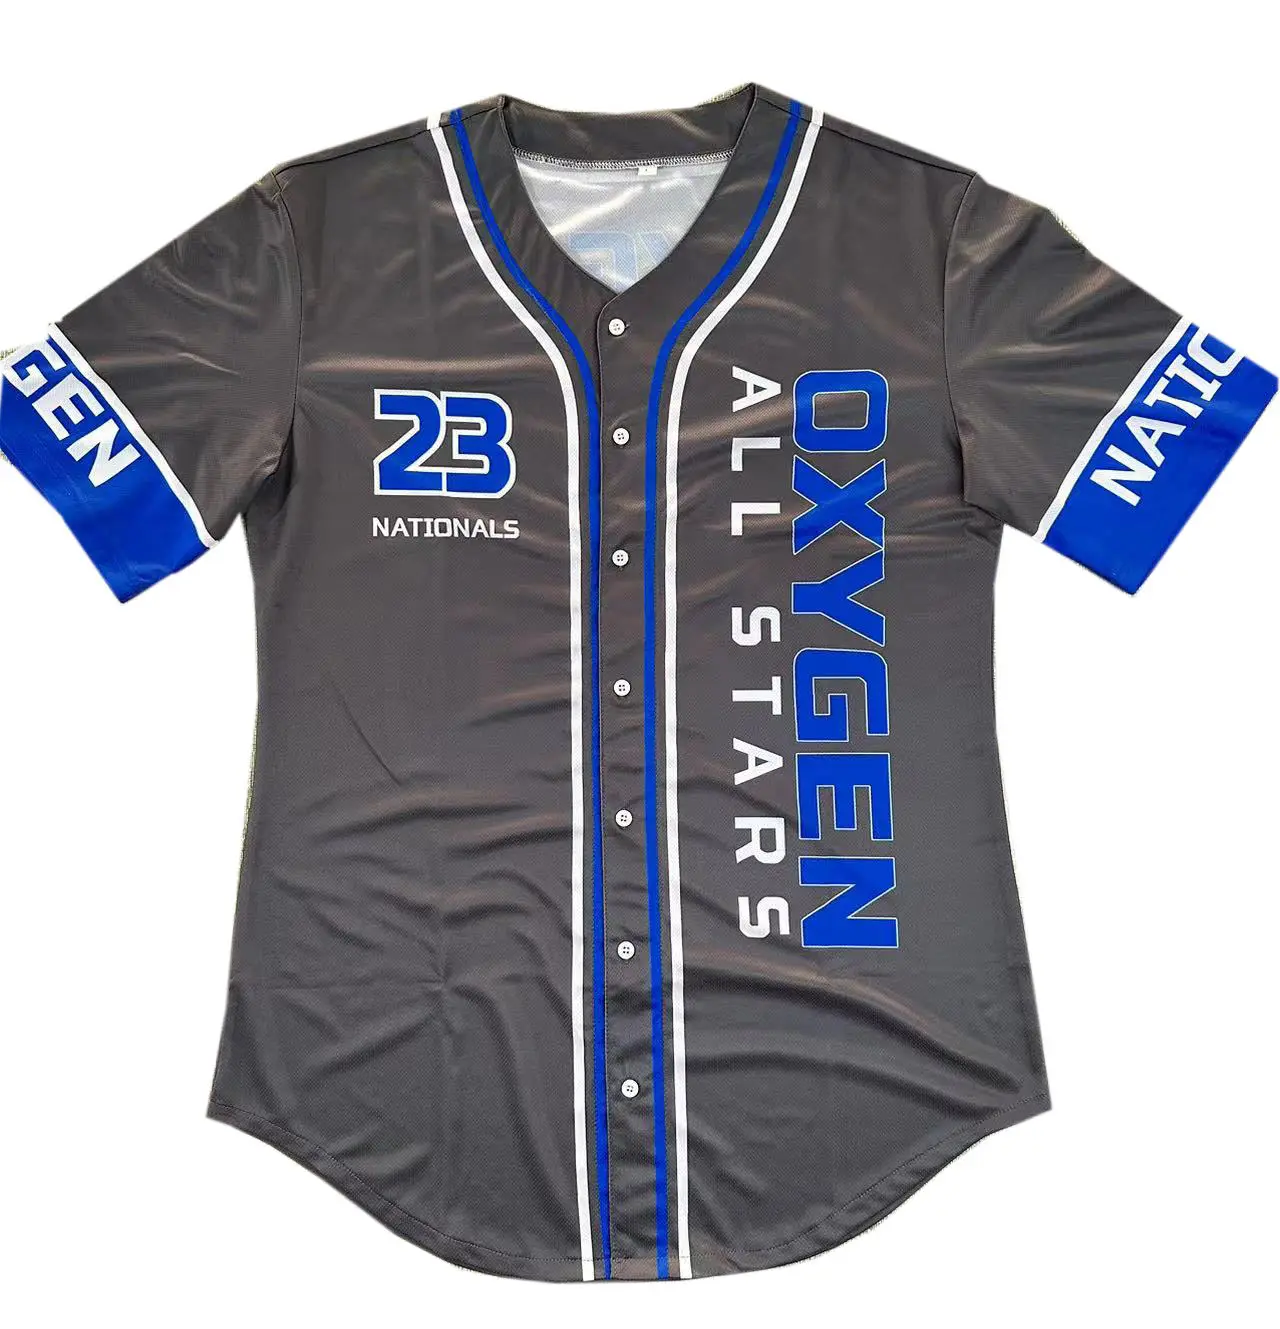 Hommes OEM personnalisé uni noir avec des bandes blanches et bleues 100% polyester coolmax manches courtes équipe de mode maillot de baseball